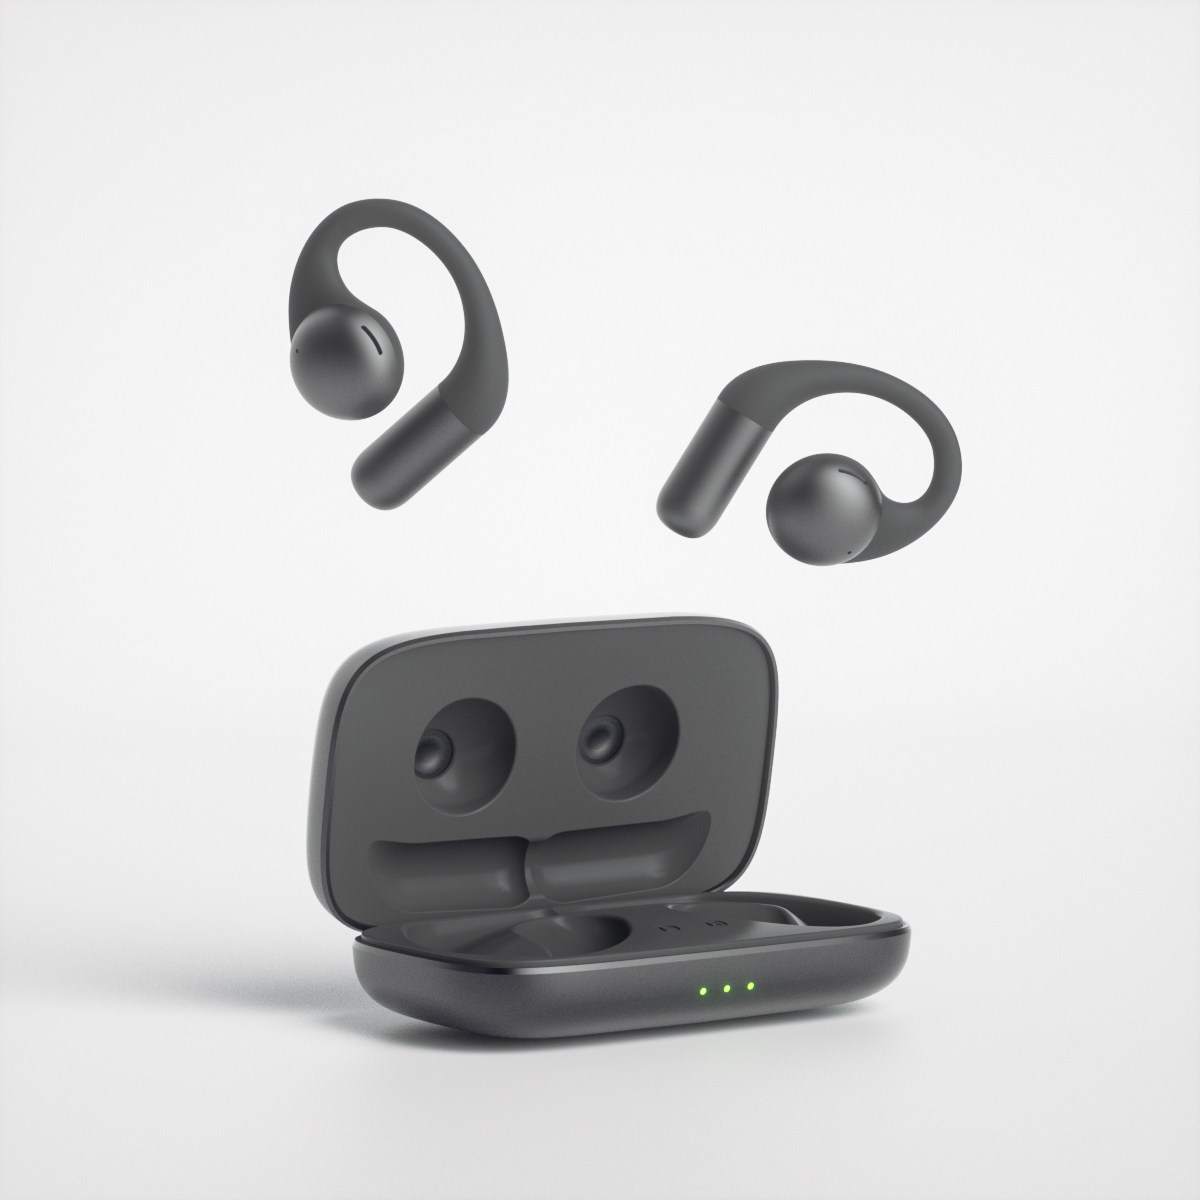 Neues Produkt Großhandel OWS Headset Ohr offene wasserdichte Kopfhörer drahtlose Bluetooth-Stereo-Kopfhörer